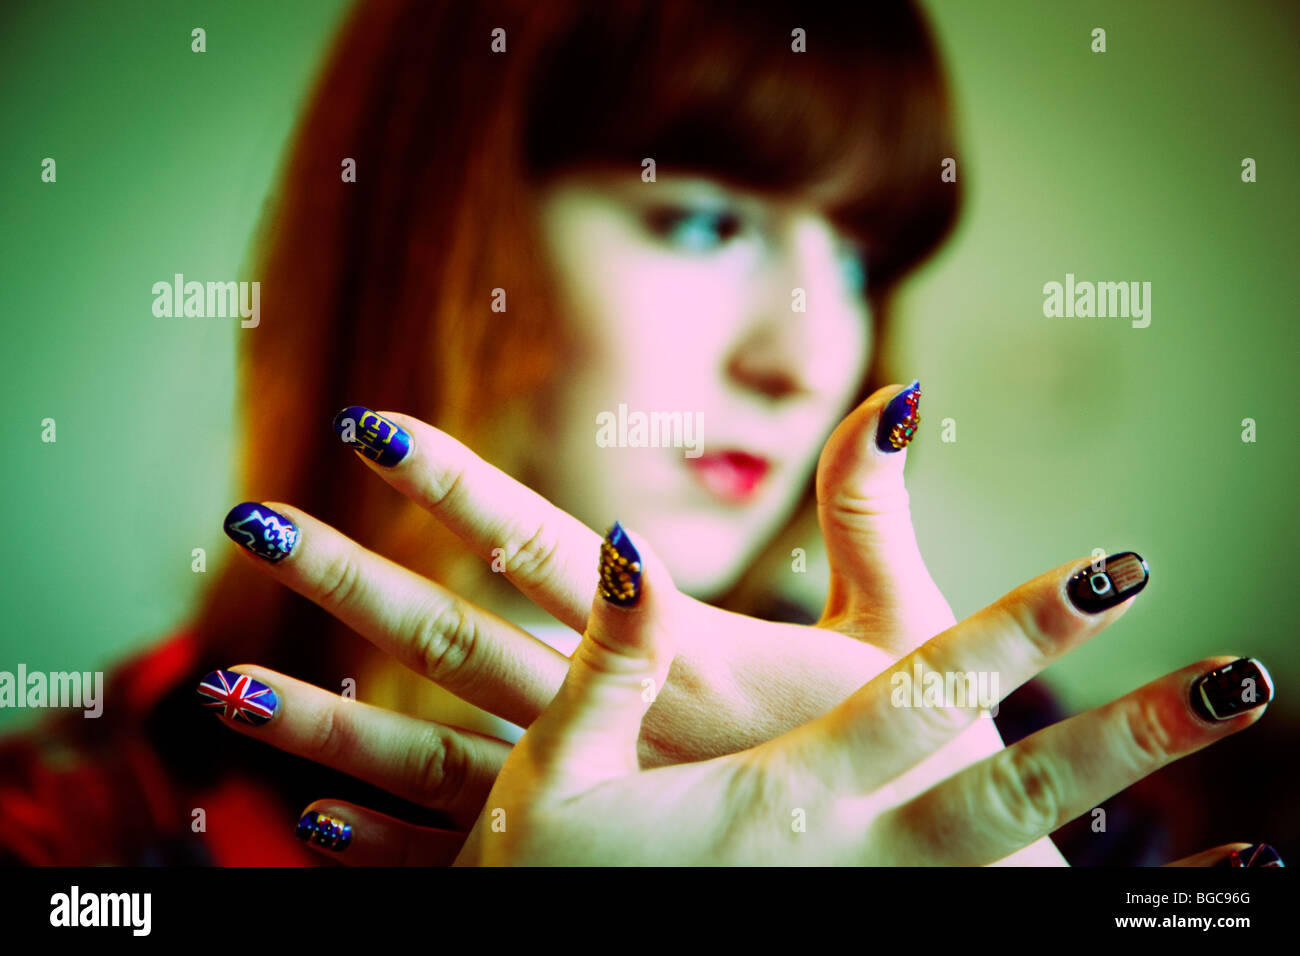 Adolescente avec art ongle peint sur mesure Banque D'Images